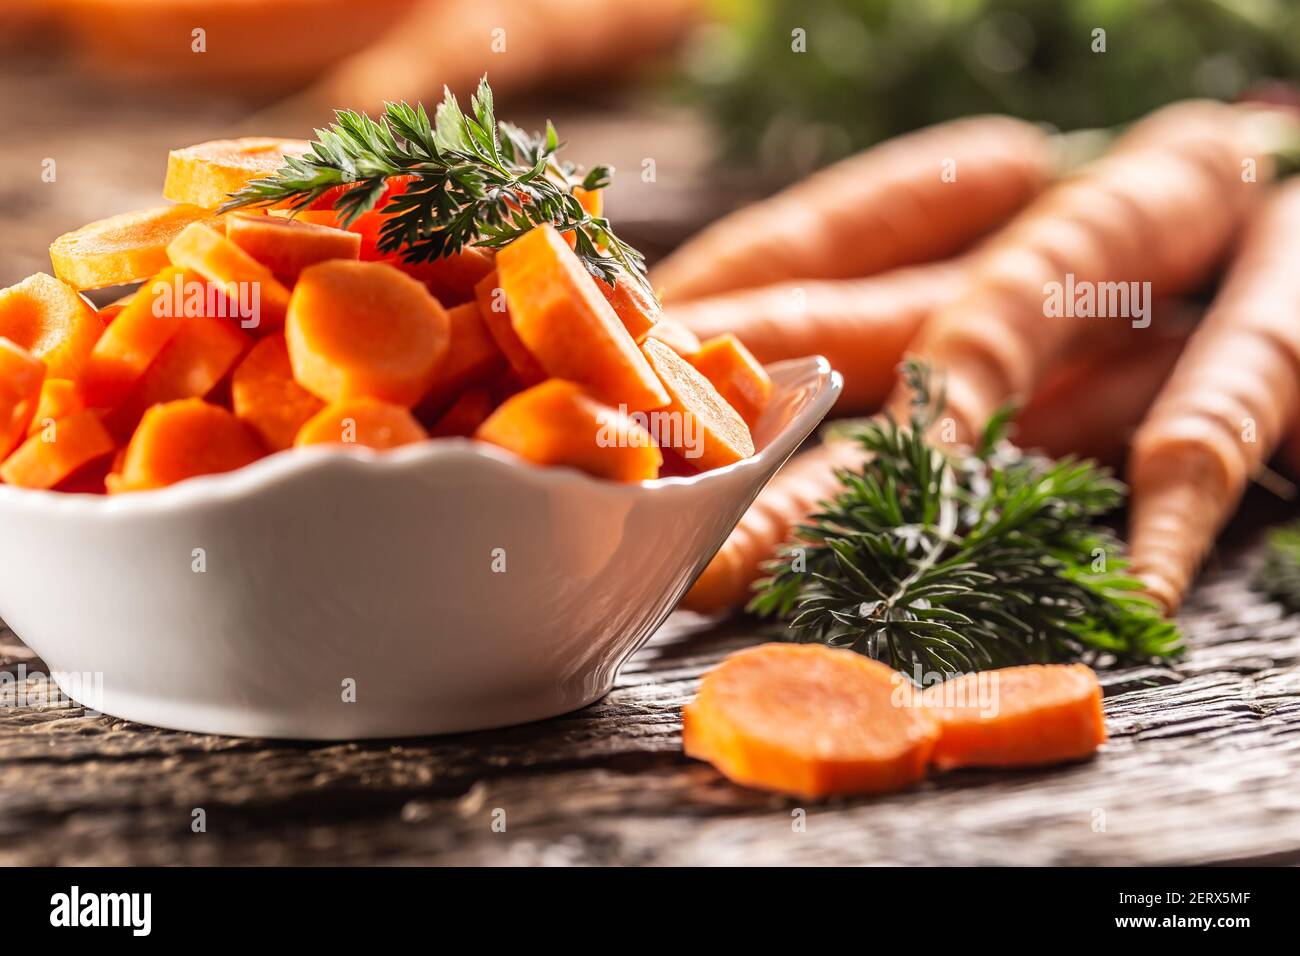 Affettato pezzi di carota in una ciotola e un fresco mazzo di carote sullo sfondo Foto Stock